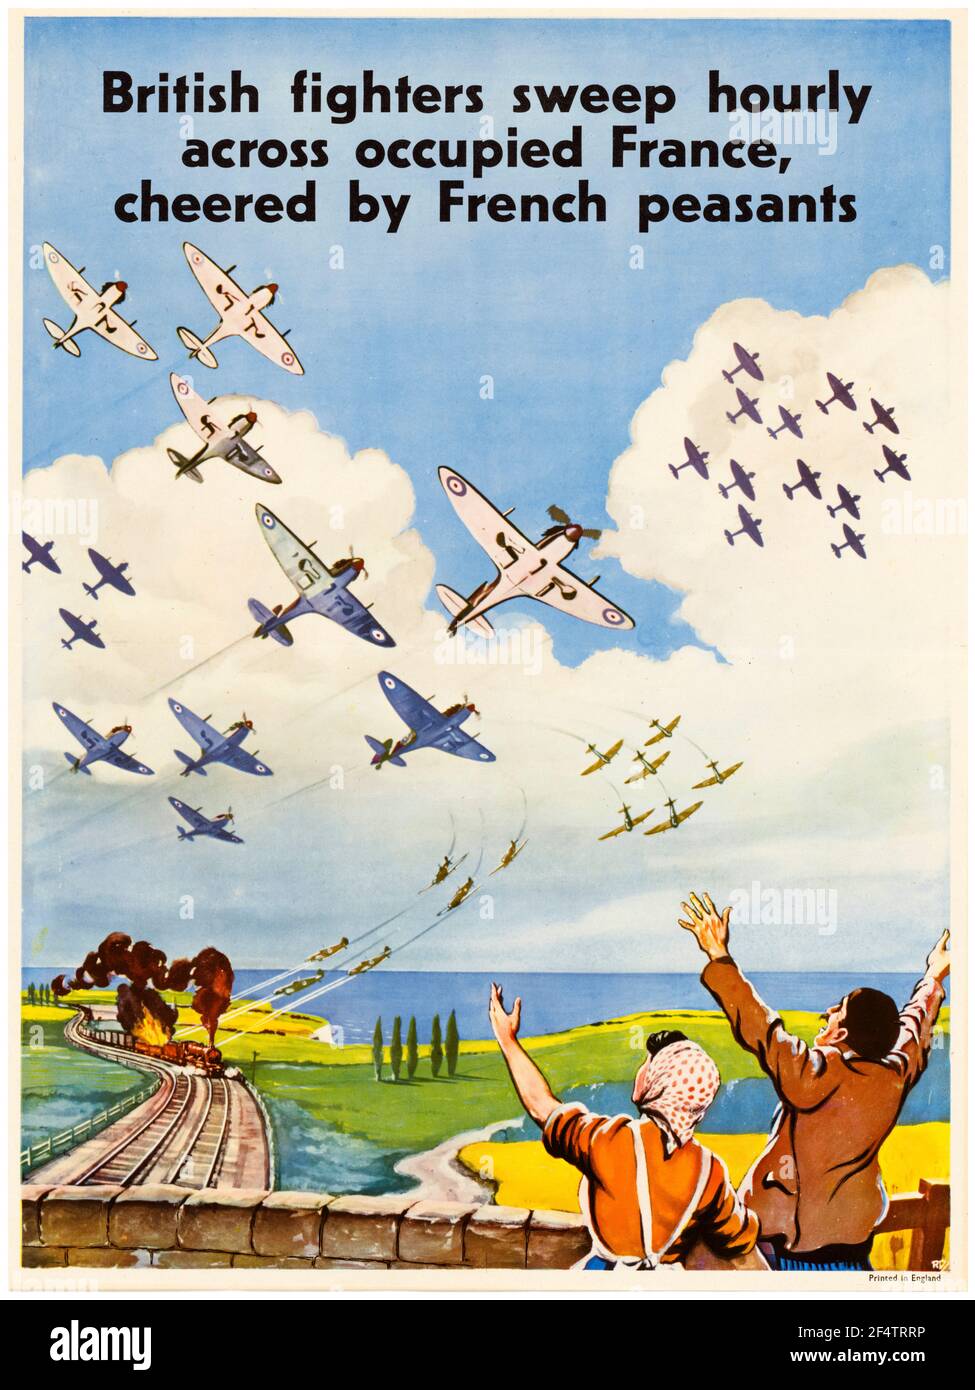 WW2, British RAF Fighters Sweep Hourly attraverso la Francia occupata acclamata dai contadini francesi, (i combattenti RAF attaccano un treno), poster motivazionale, 1942-1945 Foto Stock